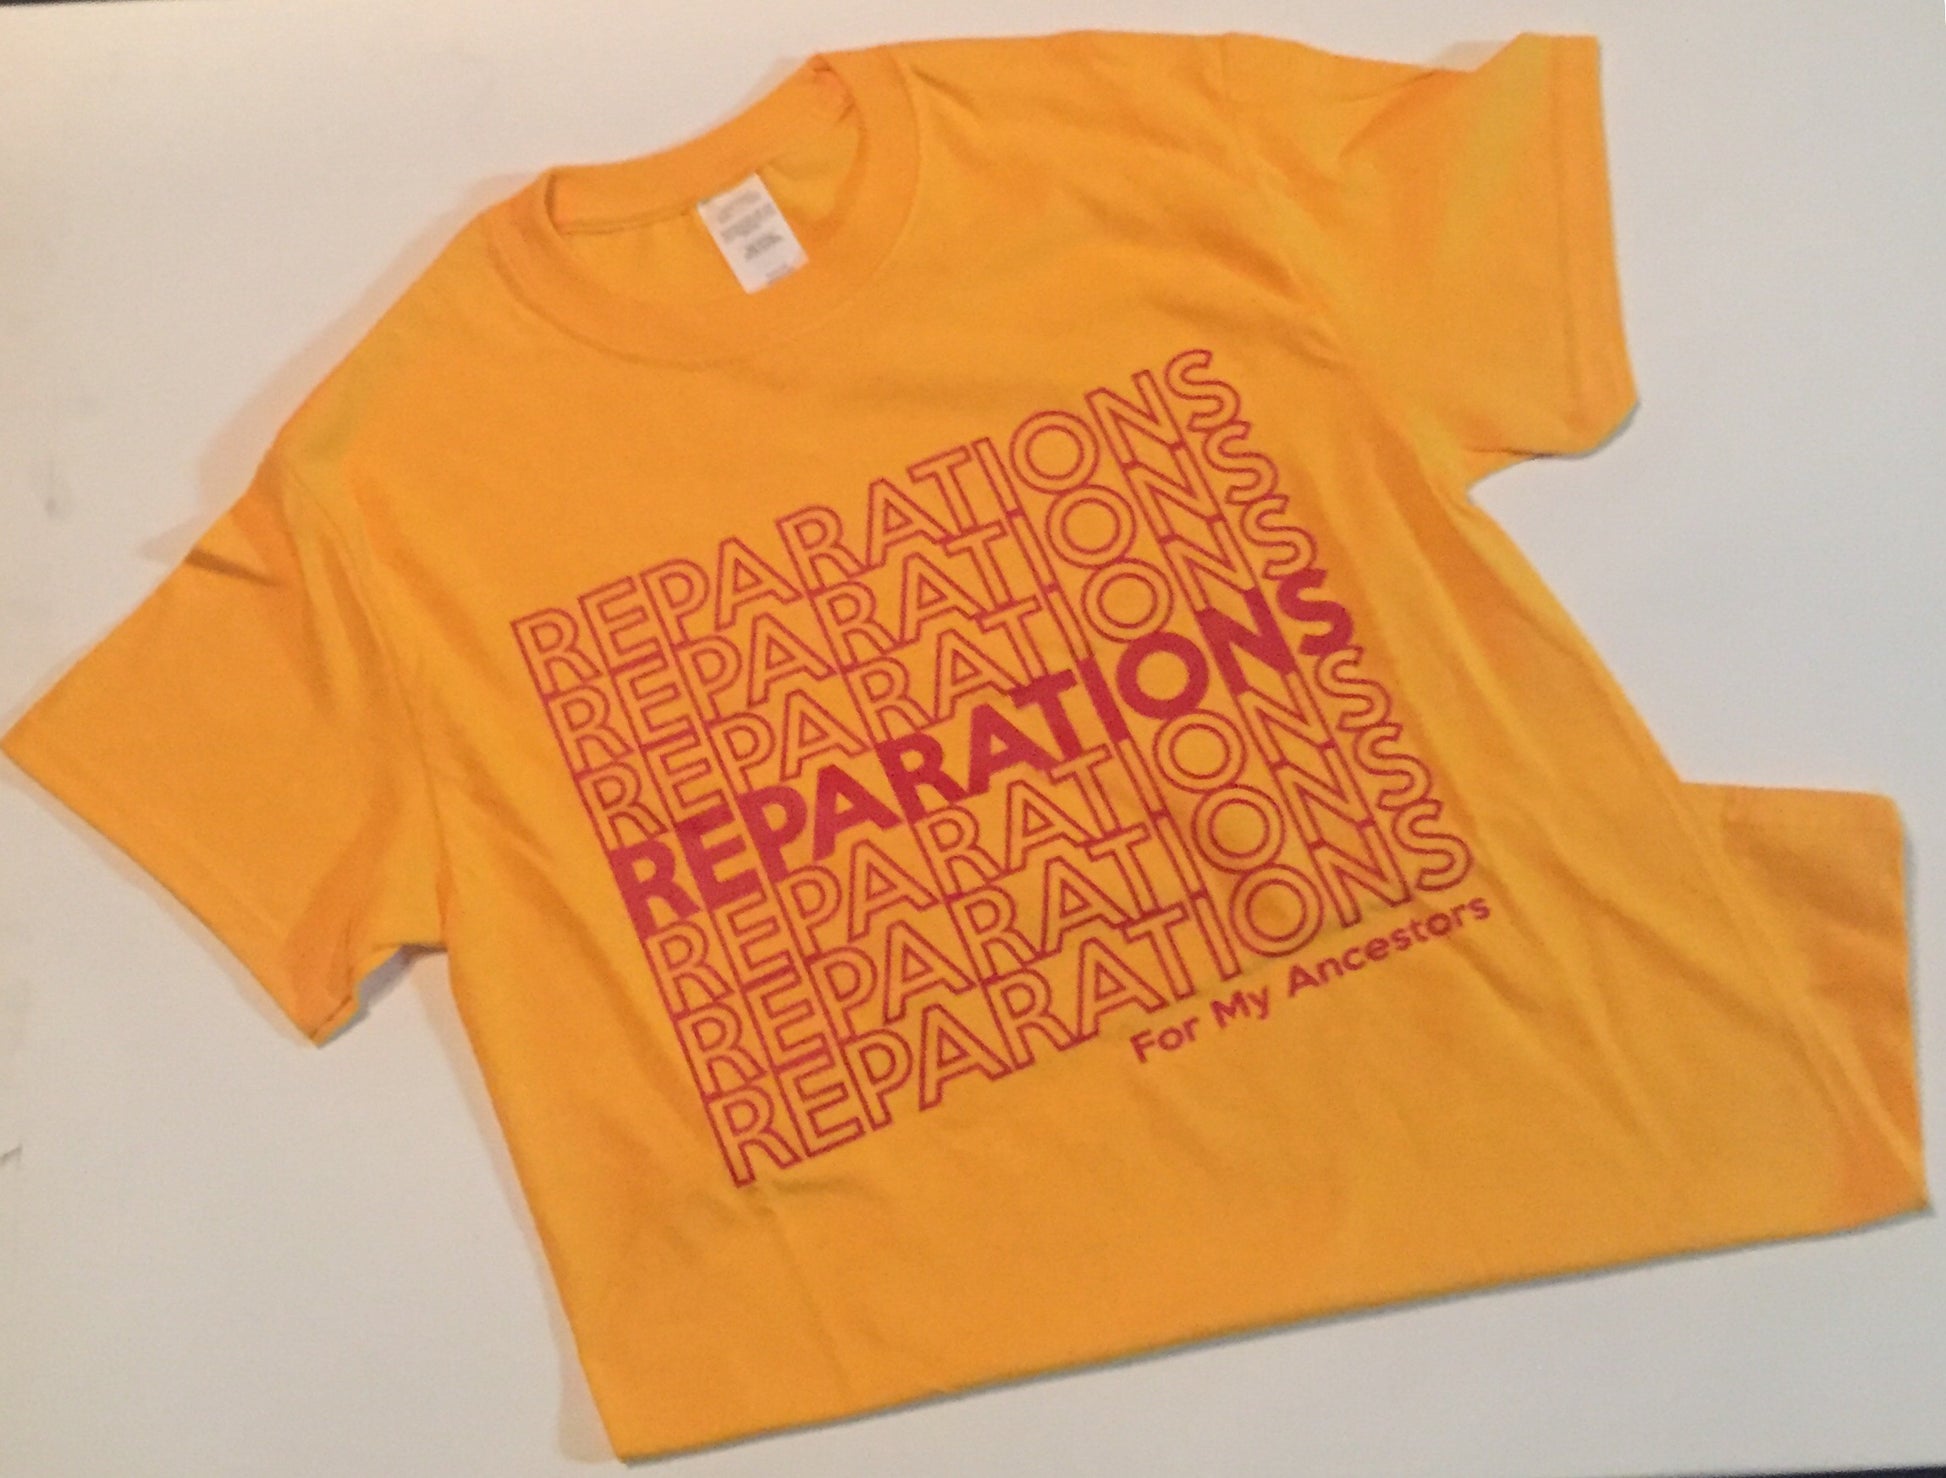 Reparations T-shirt - Black10.com